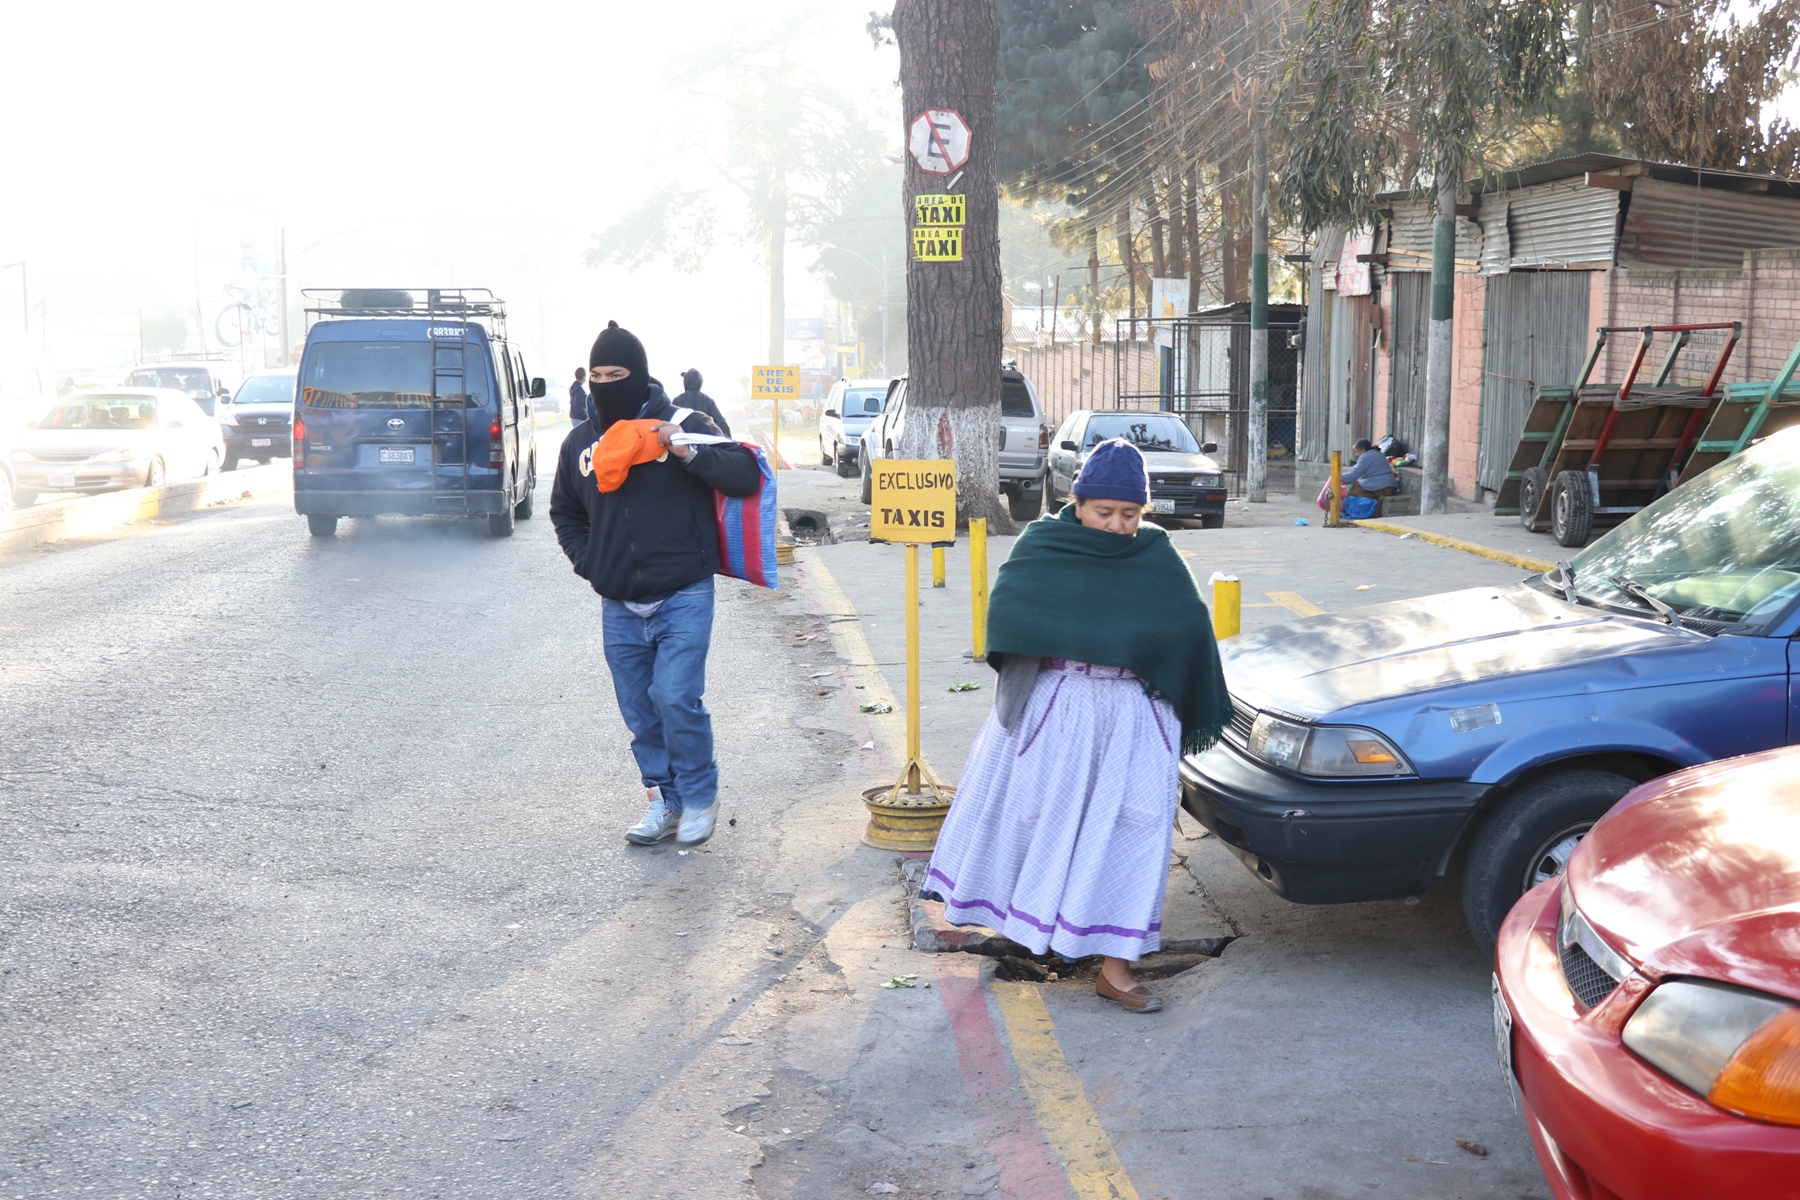 Vecinos de xela utilizan tapados, pasamontañas, gorras y bufandas para protegerse de las bajas temperaturas. (Foto Prensa Libre: María Loongo)